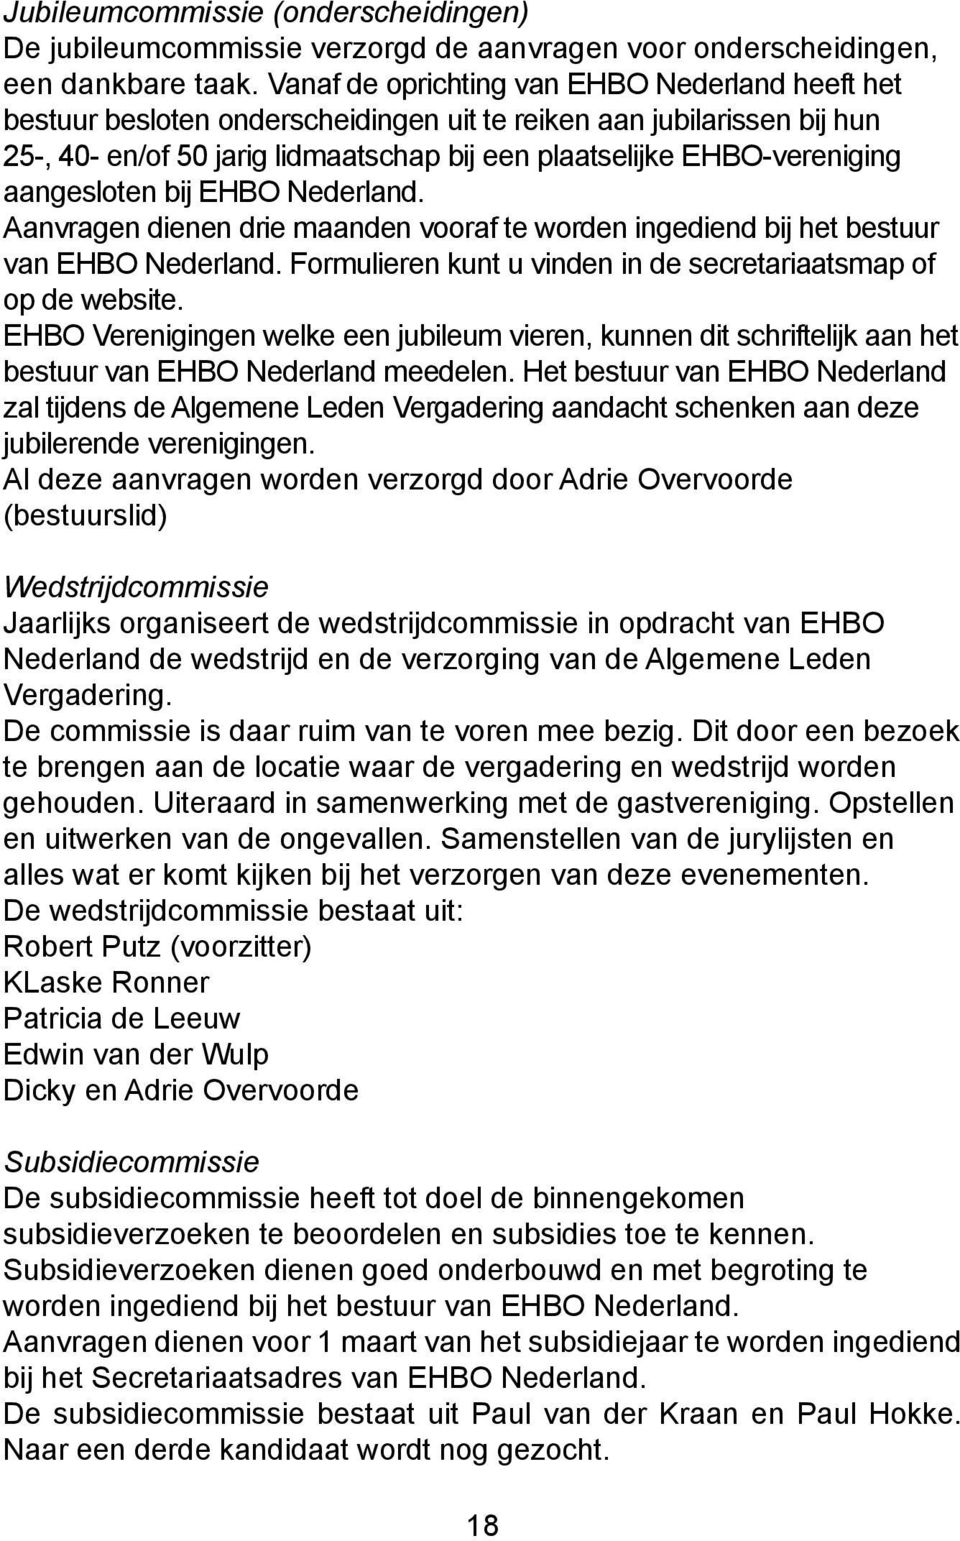 aangesloten bij EHBO Nederland. Aanvragen dienen drie maanden vooraf te worden ingediend bij het bestuur van EHBO Nederland. Formulieren kunt u vinden in de secretariaatsmap of op de website.